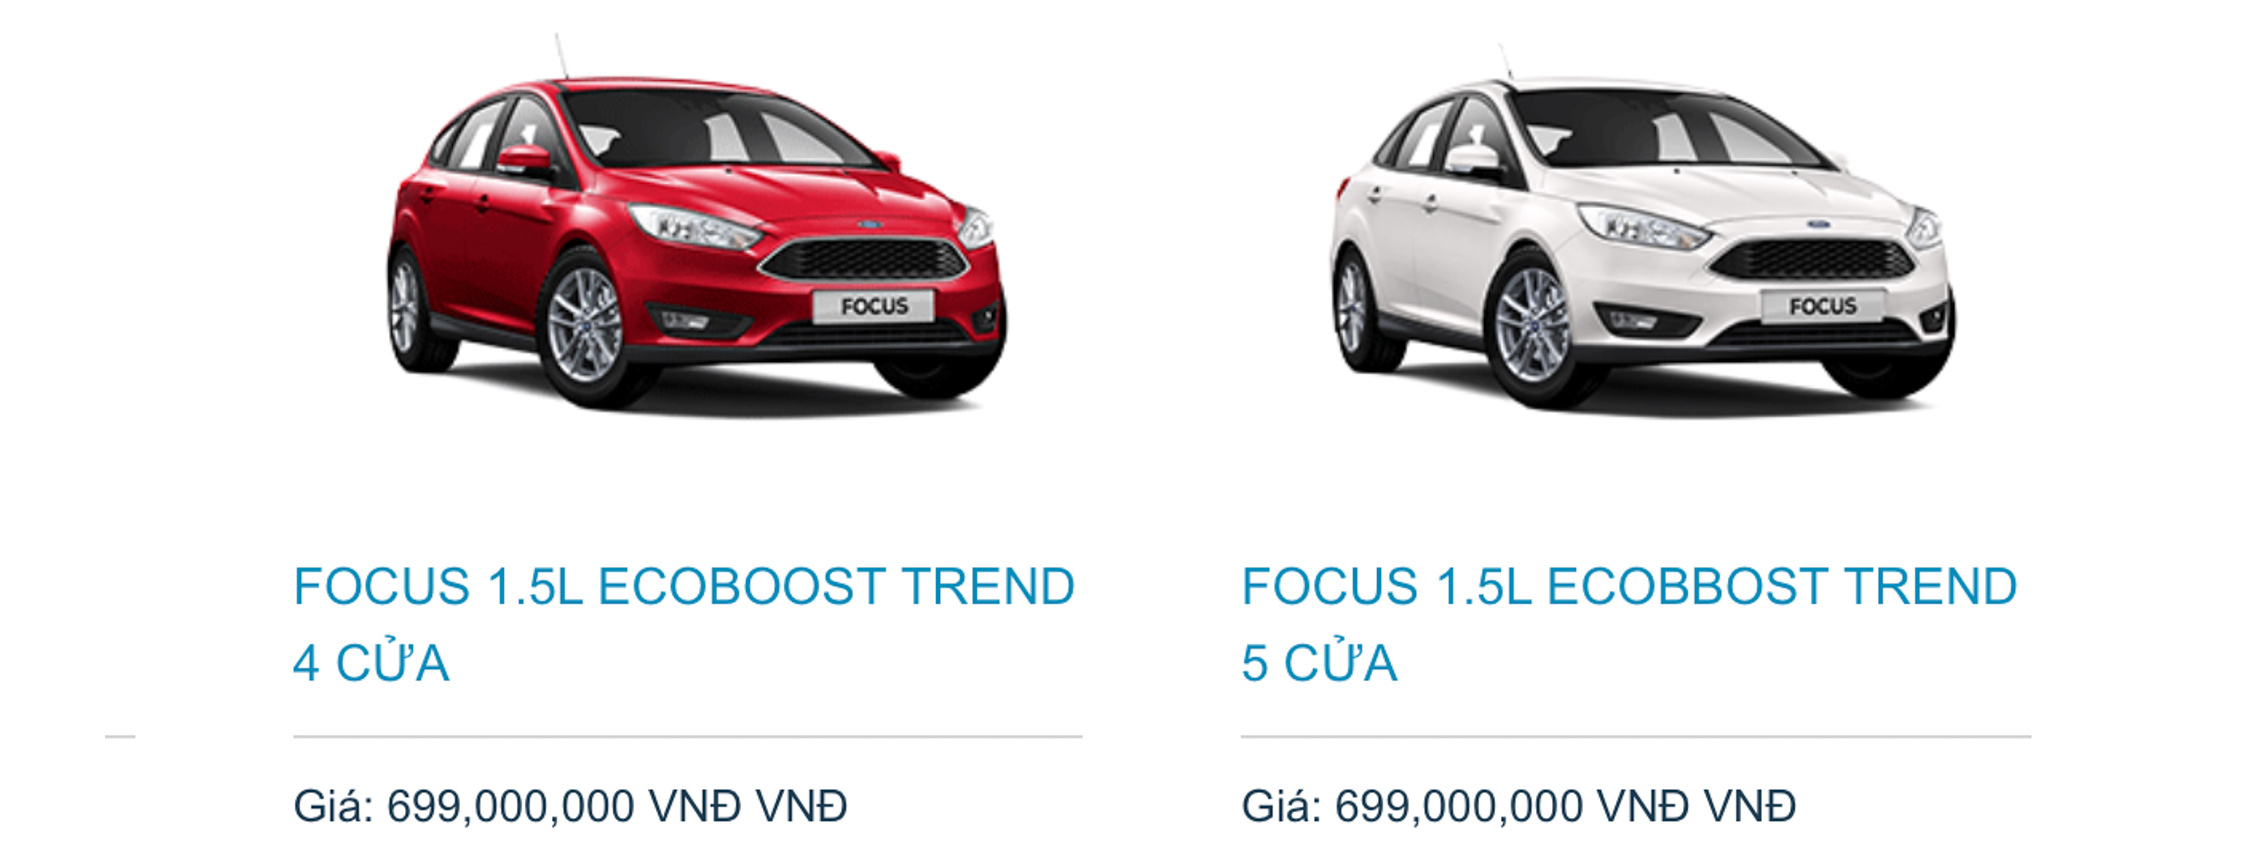 Ford Việt Nam công bố thông tin về bản Focus 1.5L Ecoboost Trend; giá 699 triệu